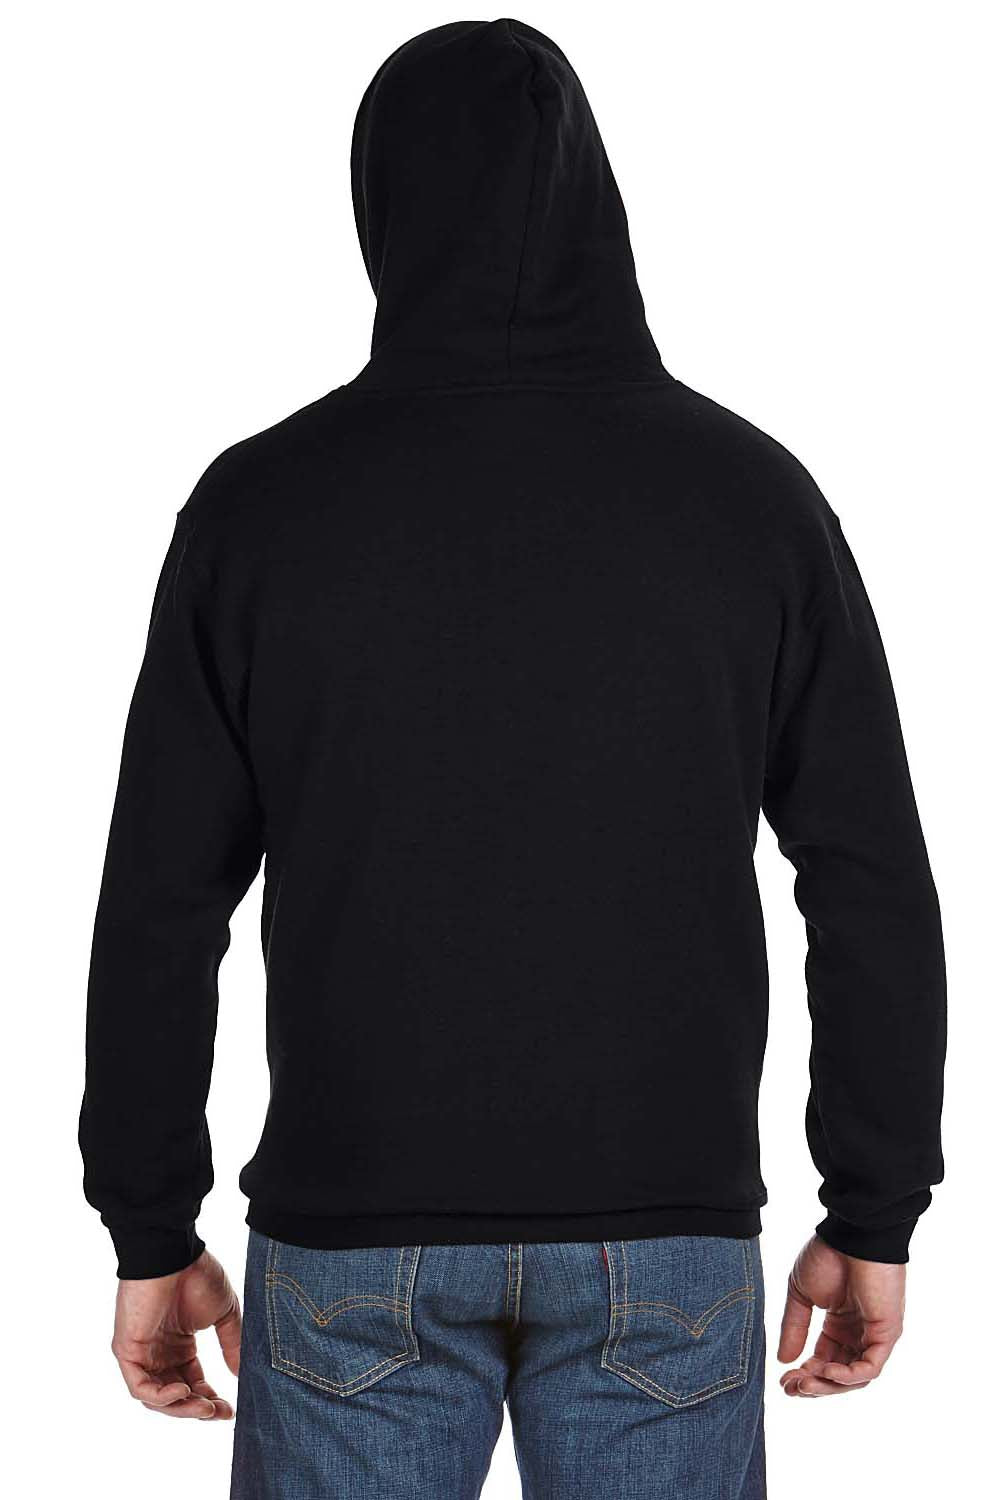 J America JA8815 Mens Tailgate Fleece Hooded Sweatshirt Hoodie Black Back